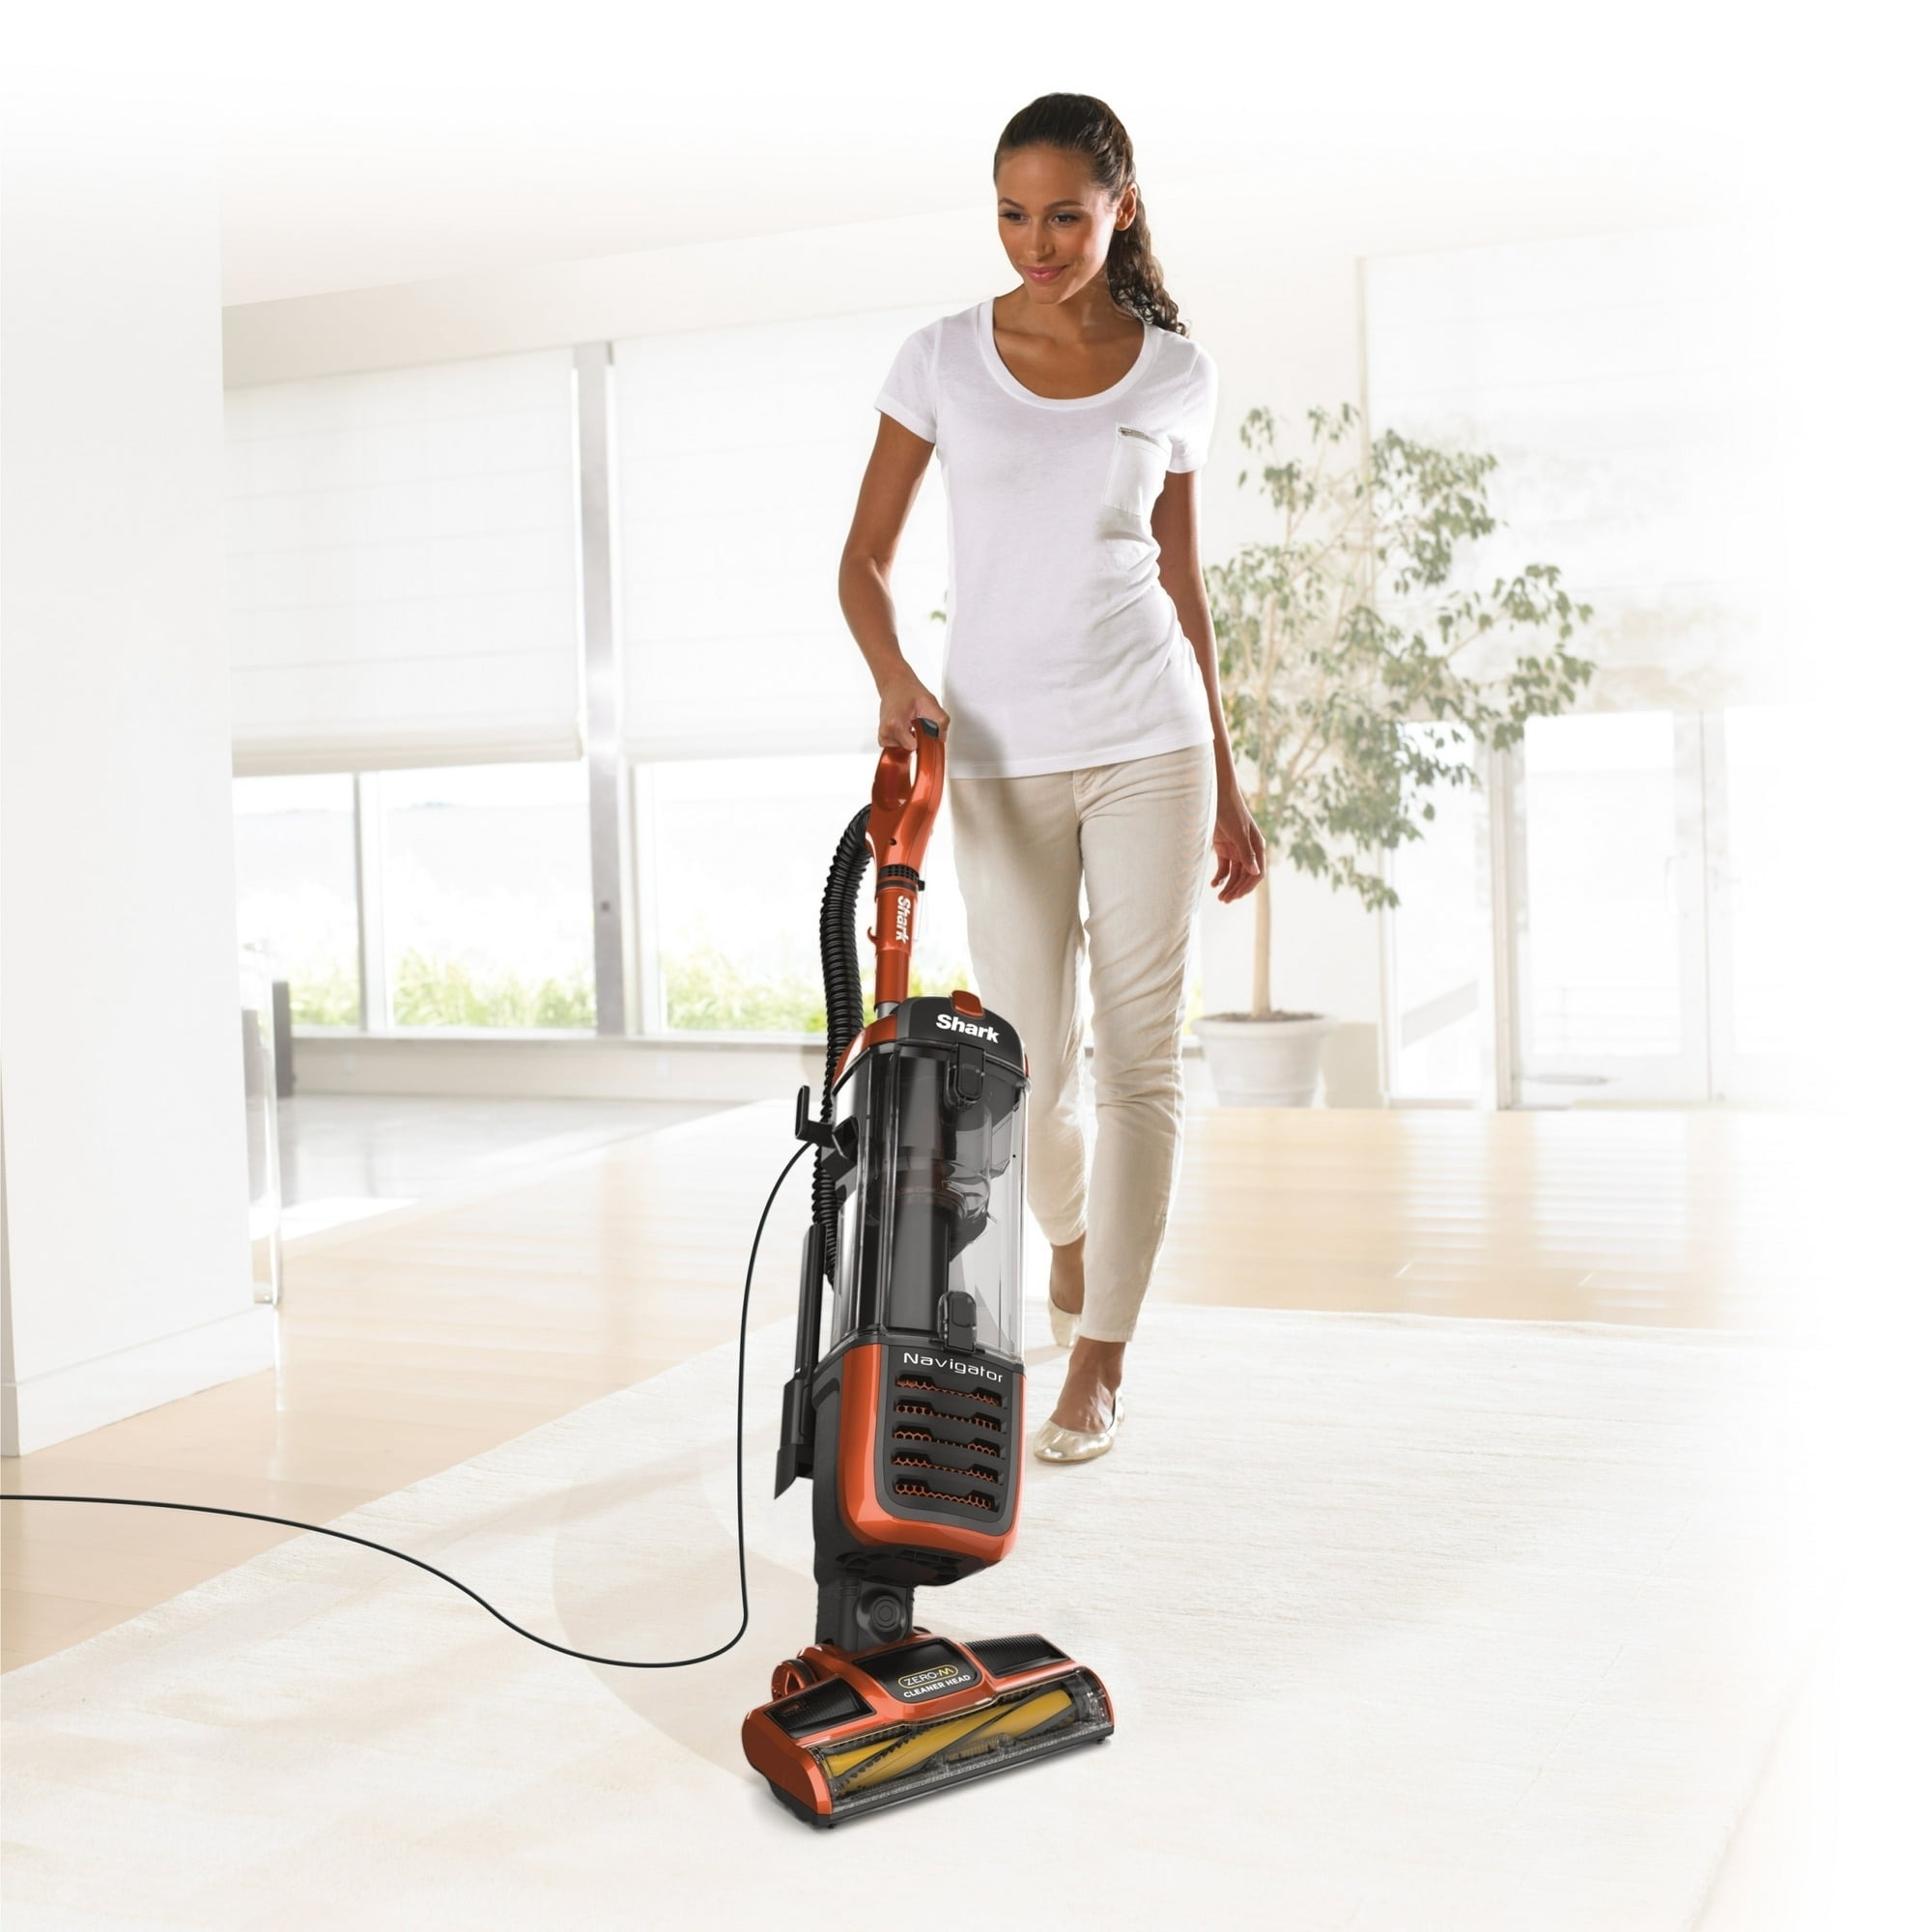 a model vacuuming a carpet